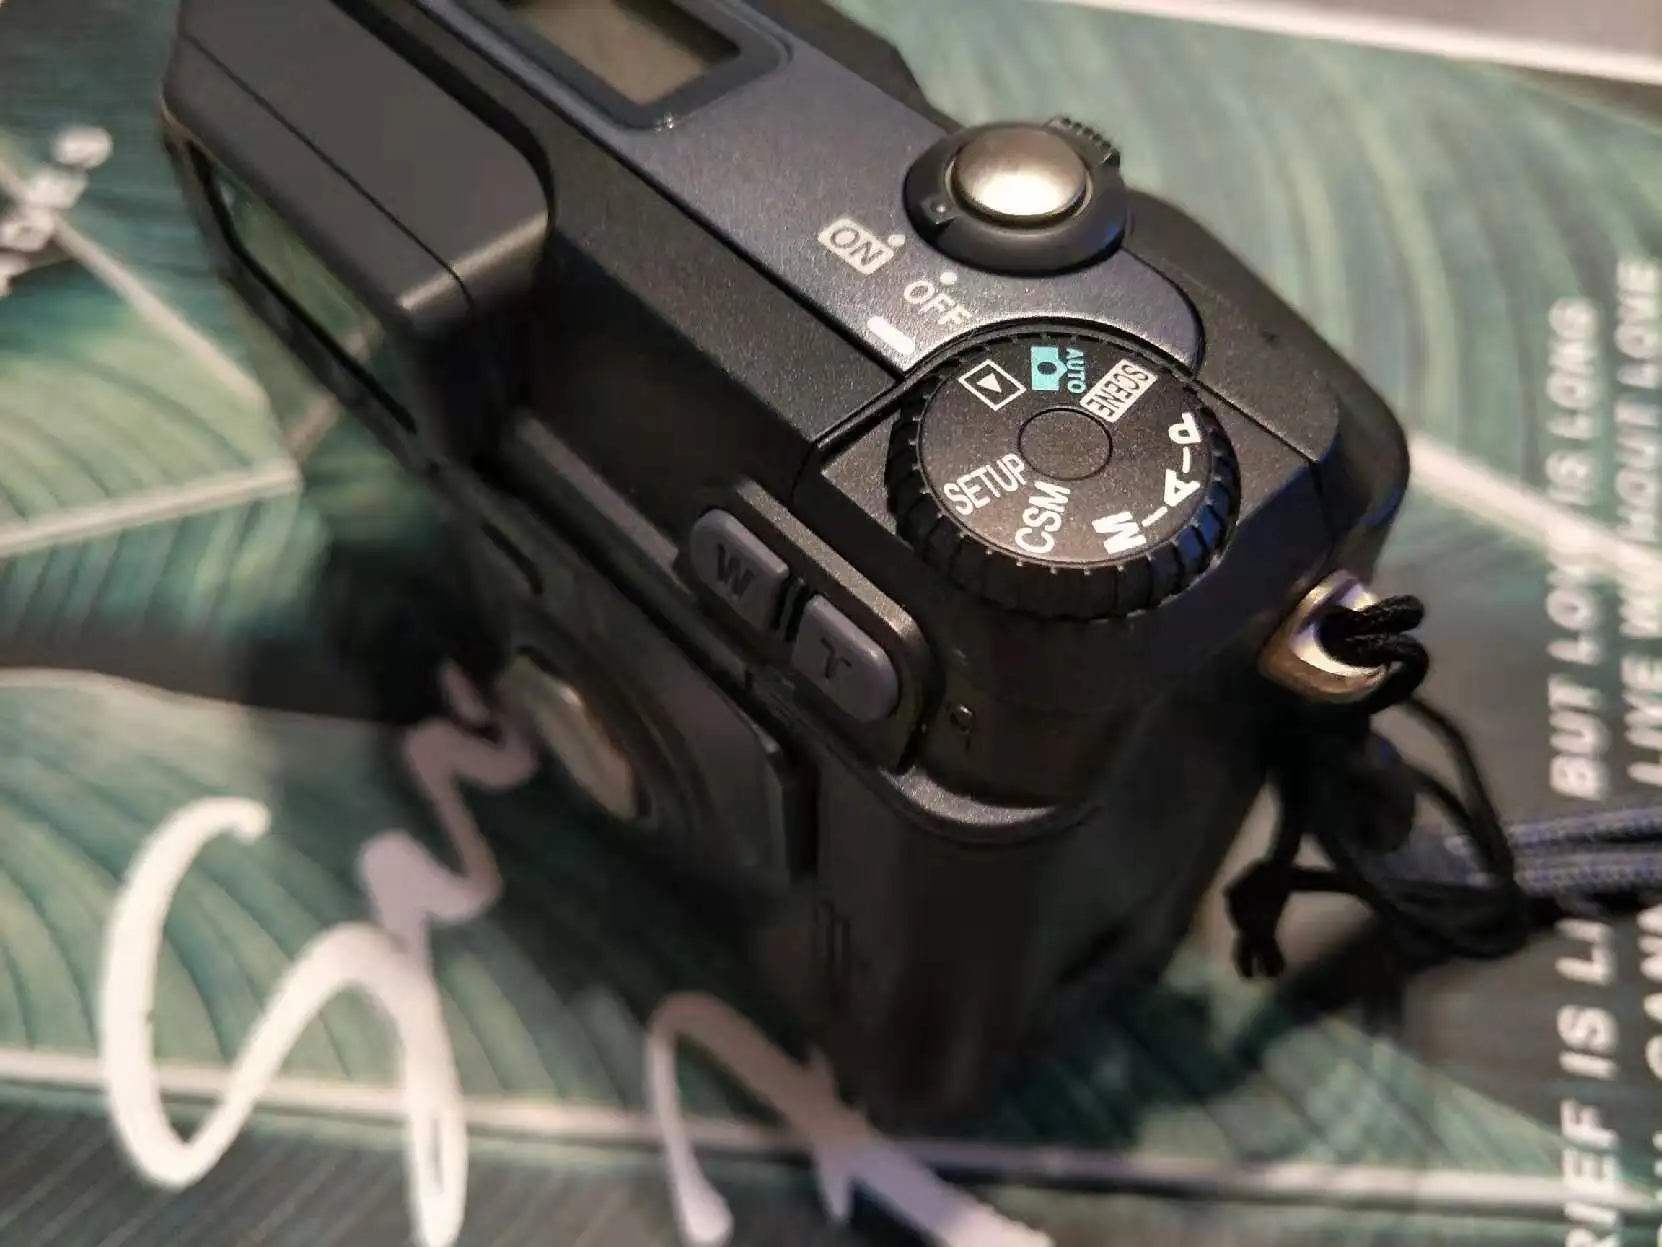 Используется камера Nikon Coolpix 880 3,34 мегапиксельная CCD 2.5x оптический зум-объектив